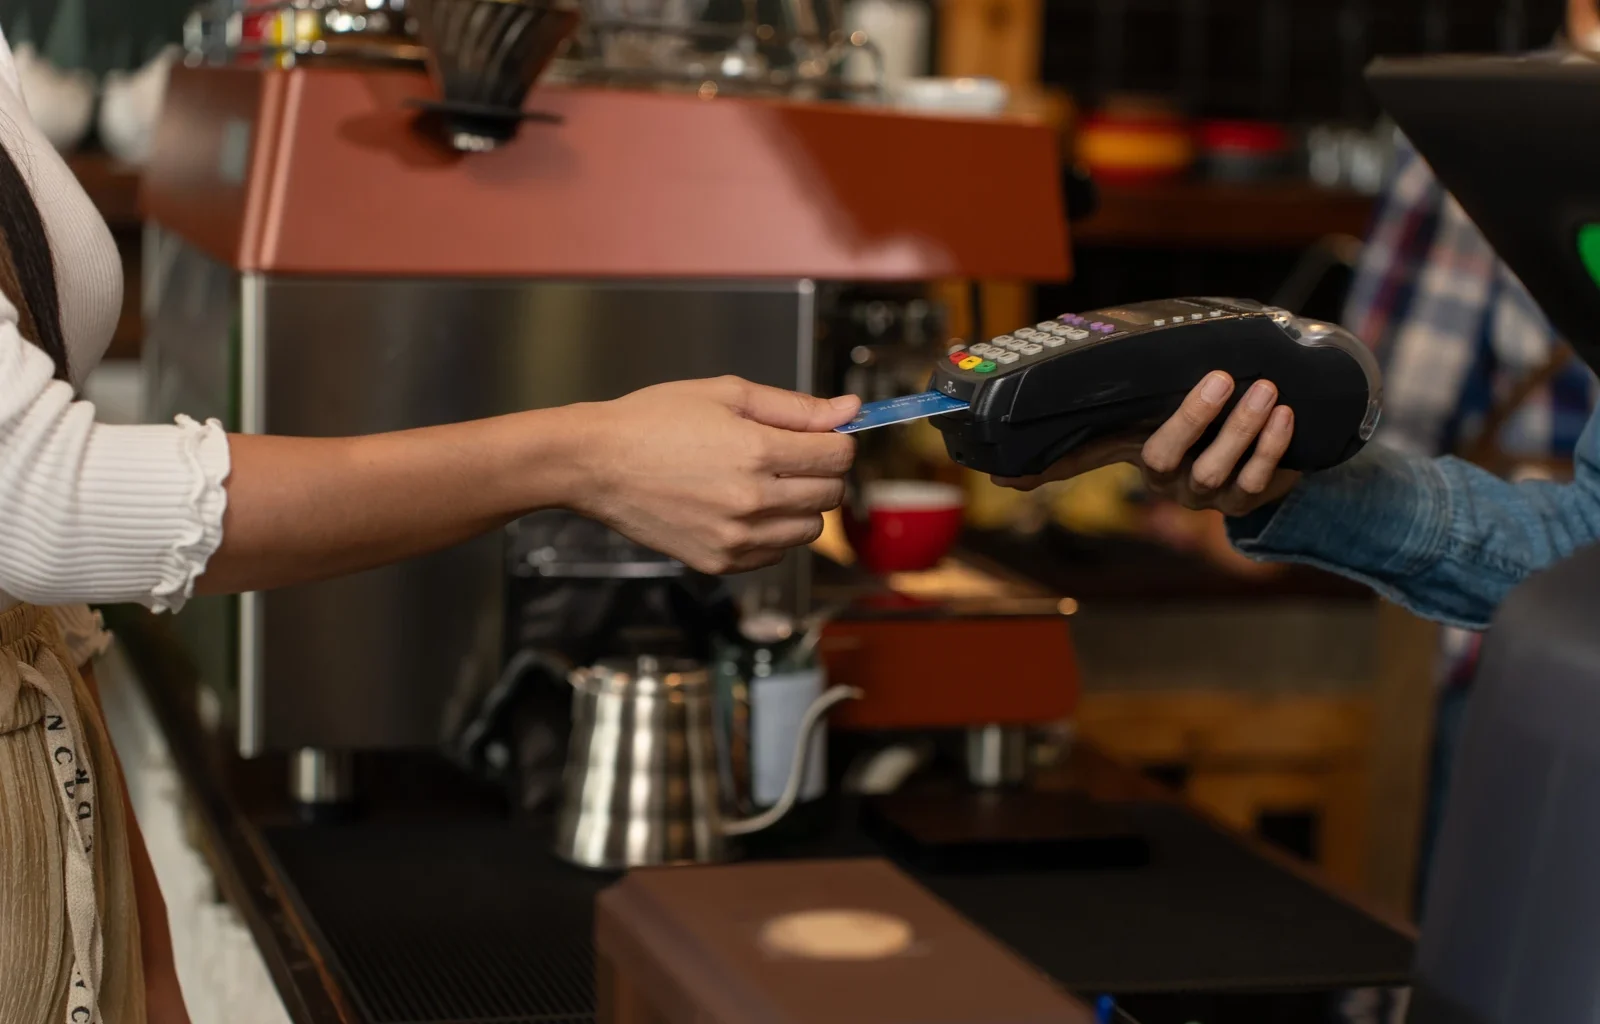 Kontaktloses Bezahlen mit Kreditkarte, Kundenfrau bezahlt Kaffee mit Kreditkarte im Café. Kleinunternehmen, Geschäftsinhaber.